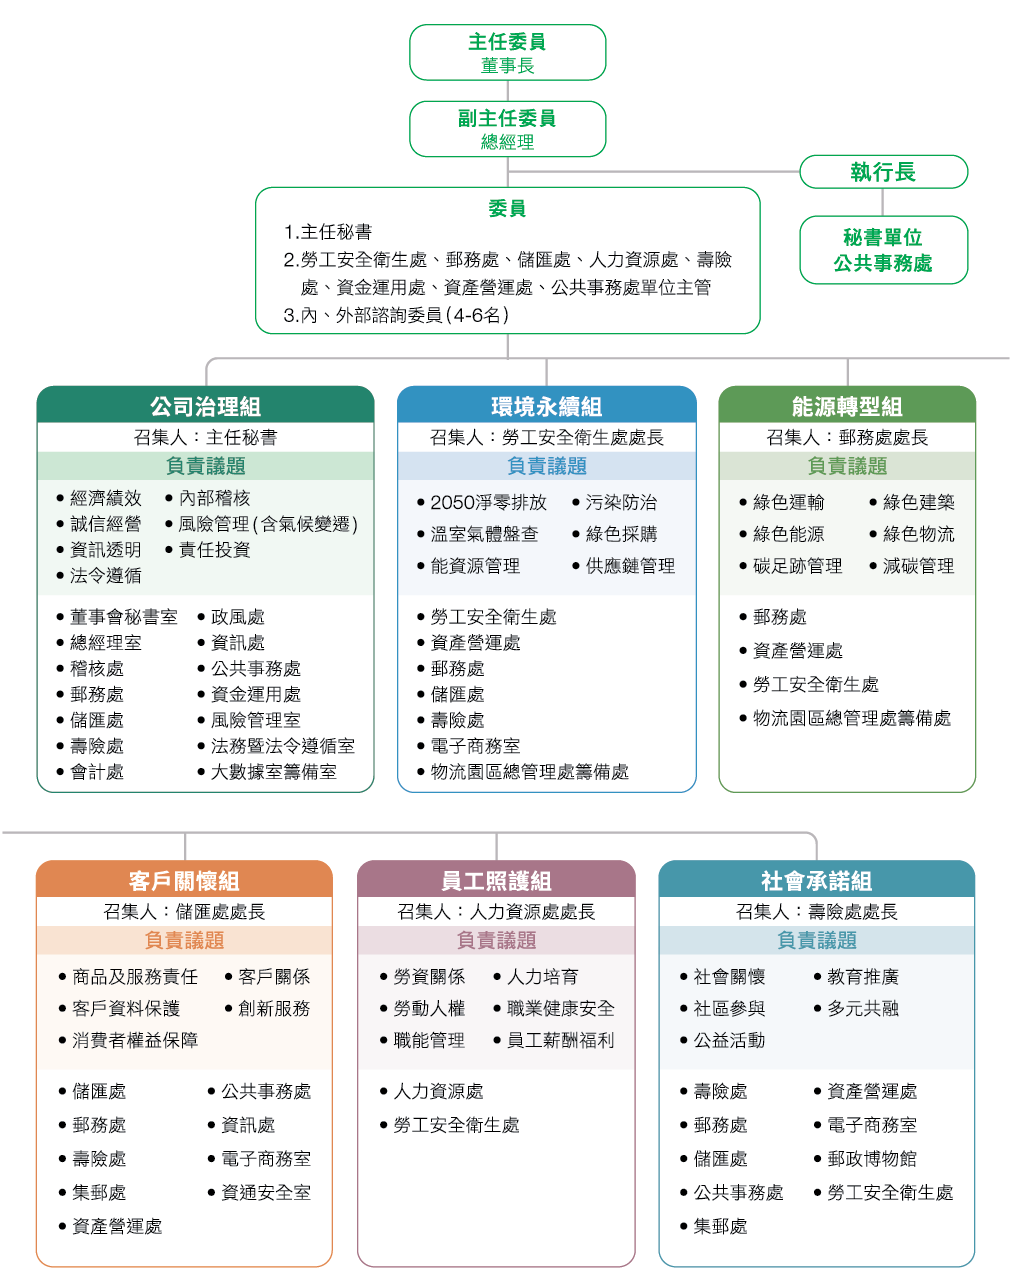 中華郵政永續發展委員會之組織架構